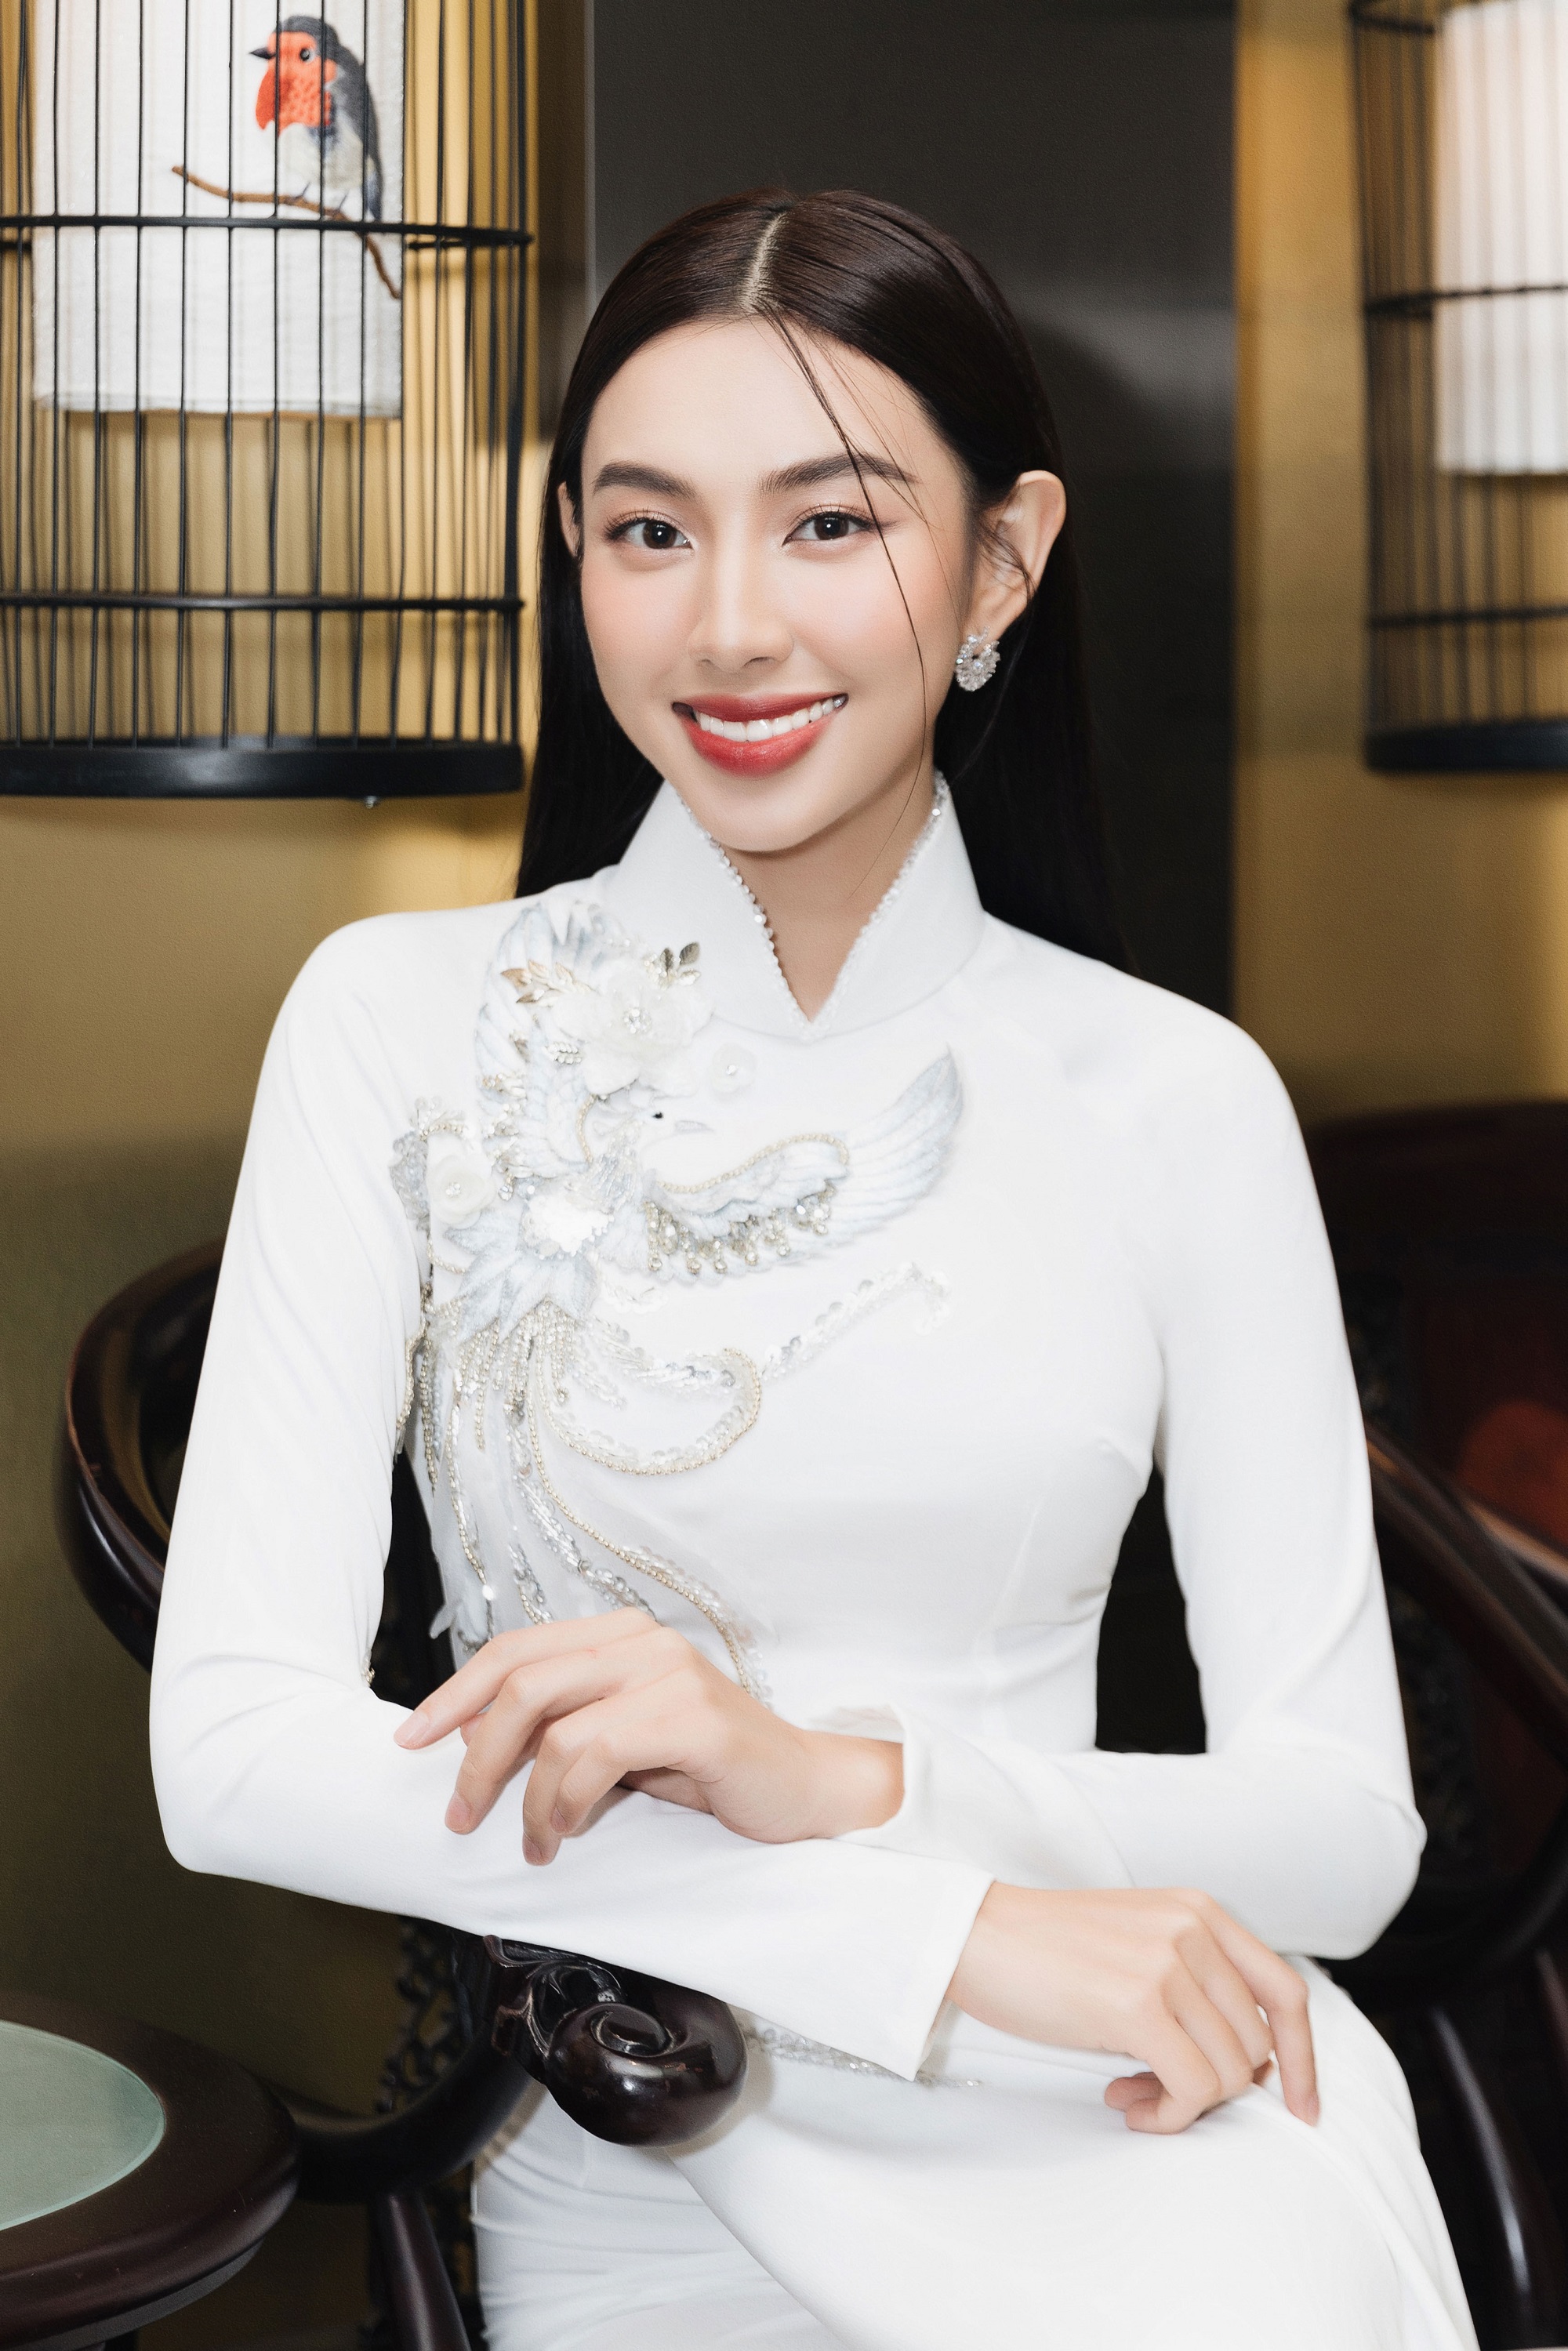 Tin tức giải trí - Không còn cắt xẻ táo bạo, Hoa hậu Thùy Tiên quay trở lại với áo dài truyền thông khi đi sự kiện (Hình 5).